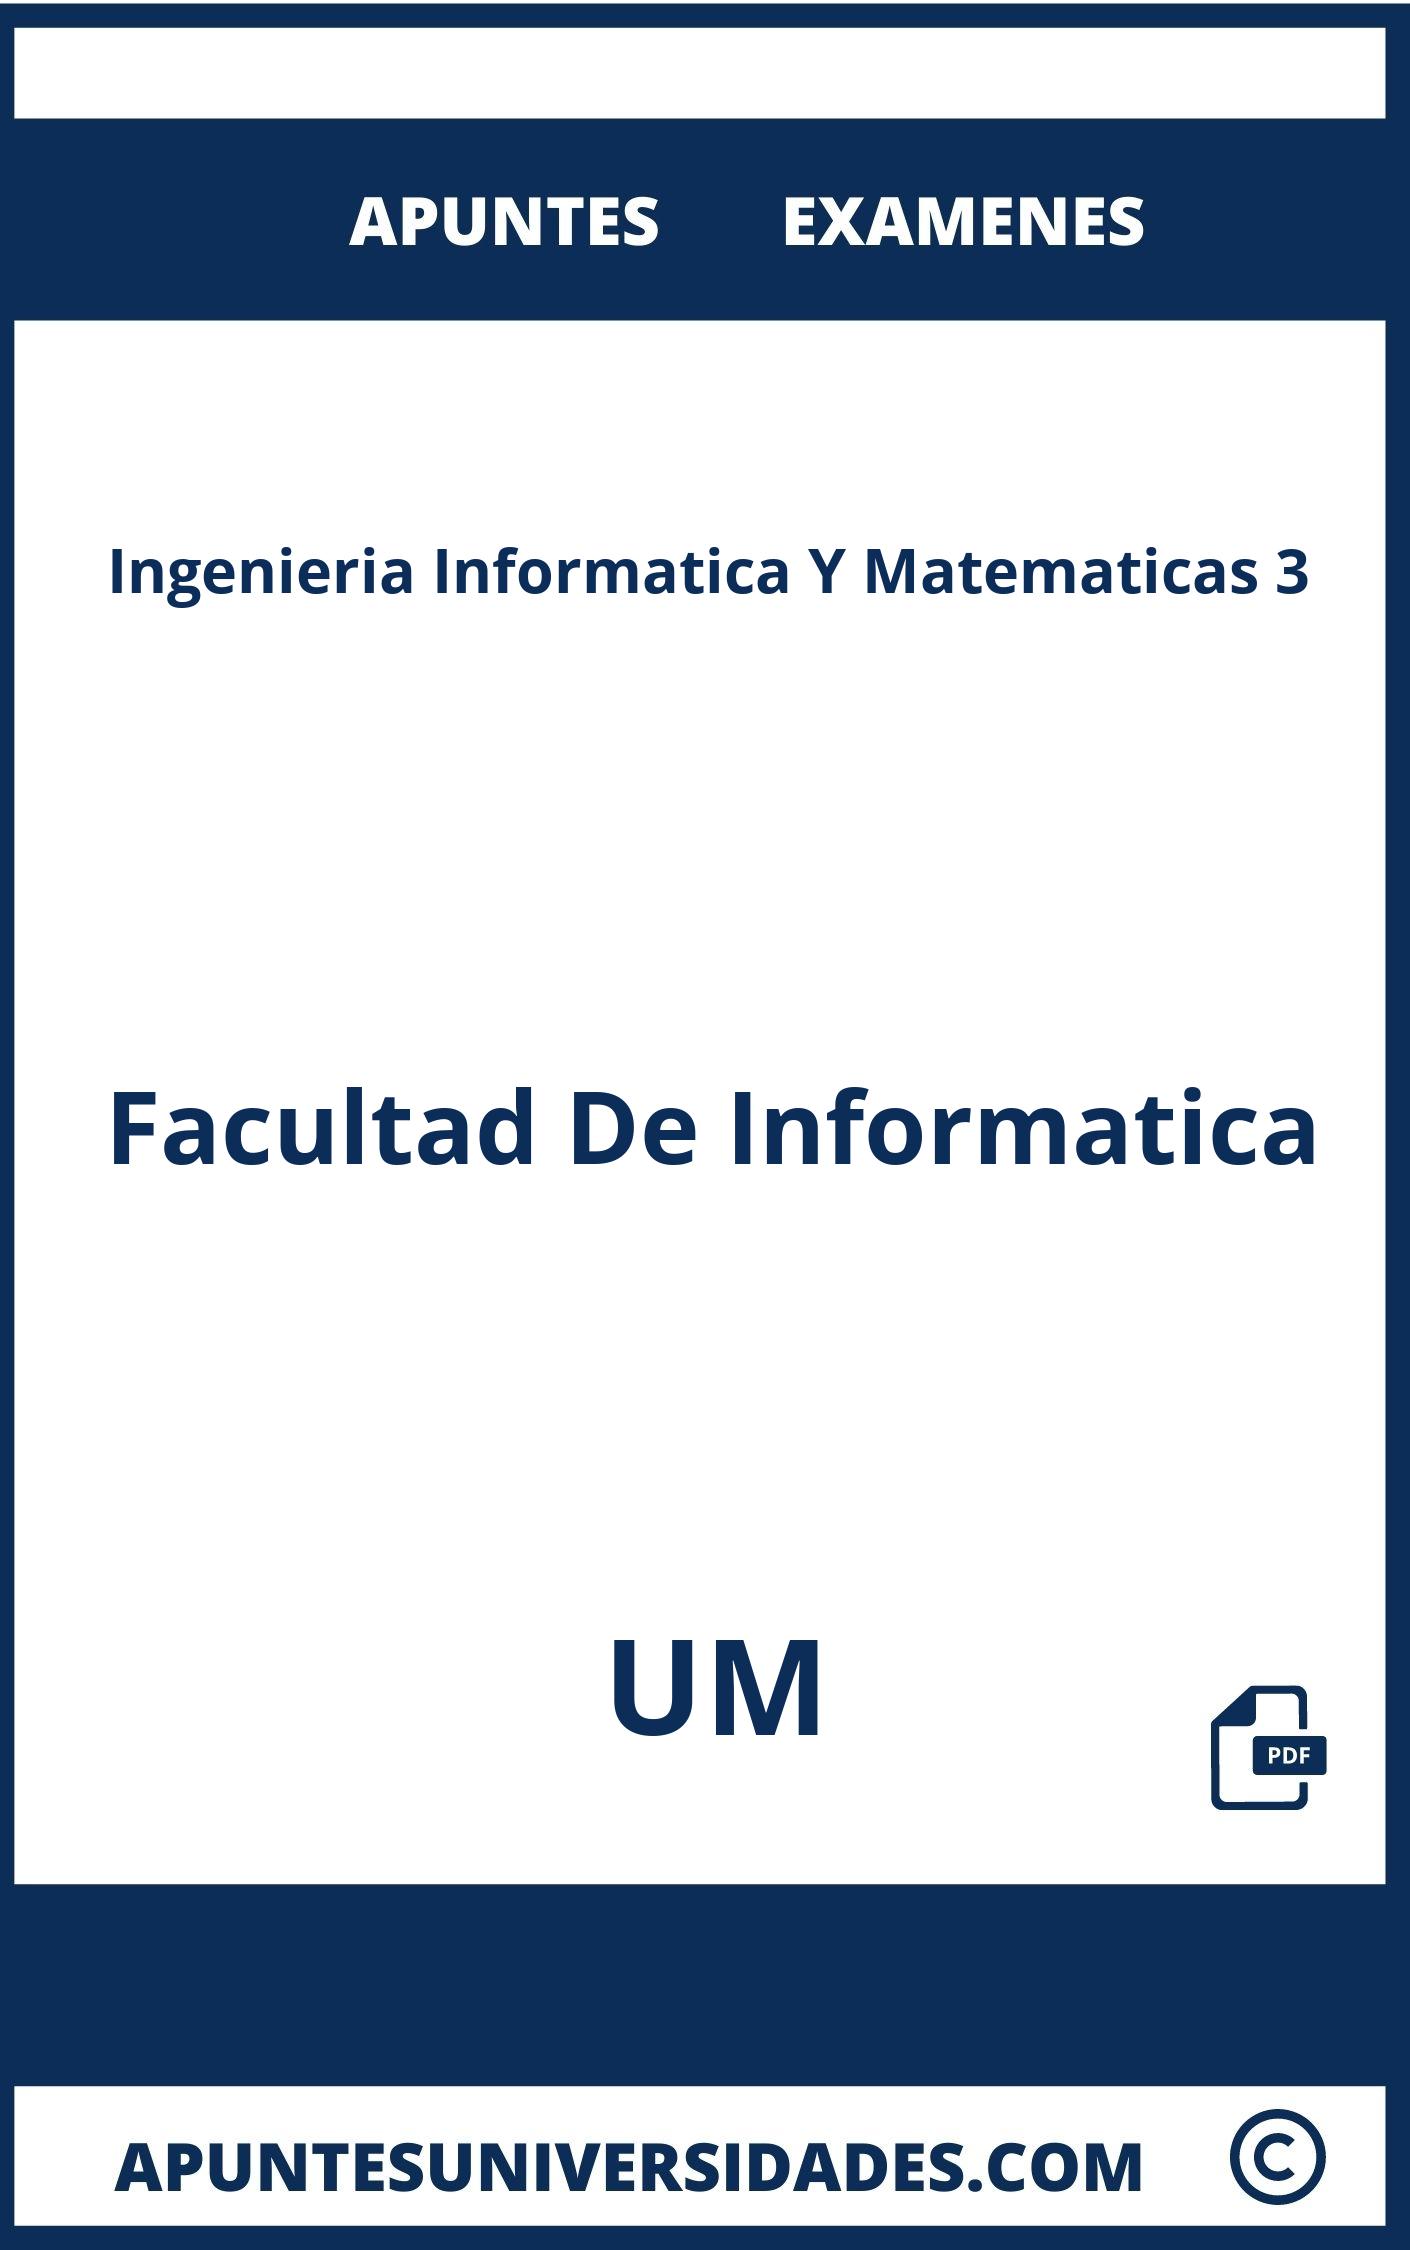 Apuntes Examenes Ingenieria Informatica Y Matematicas 3 UM